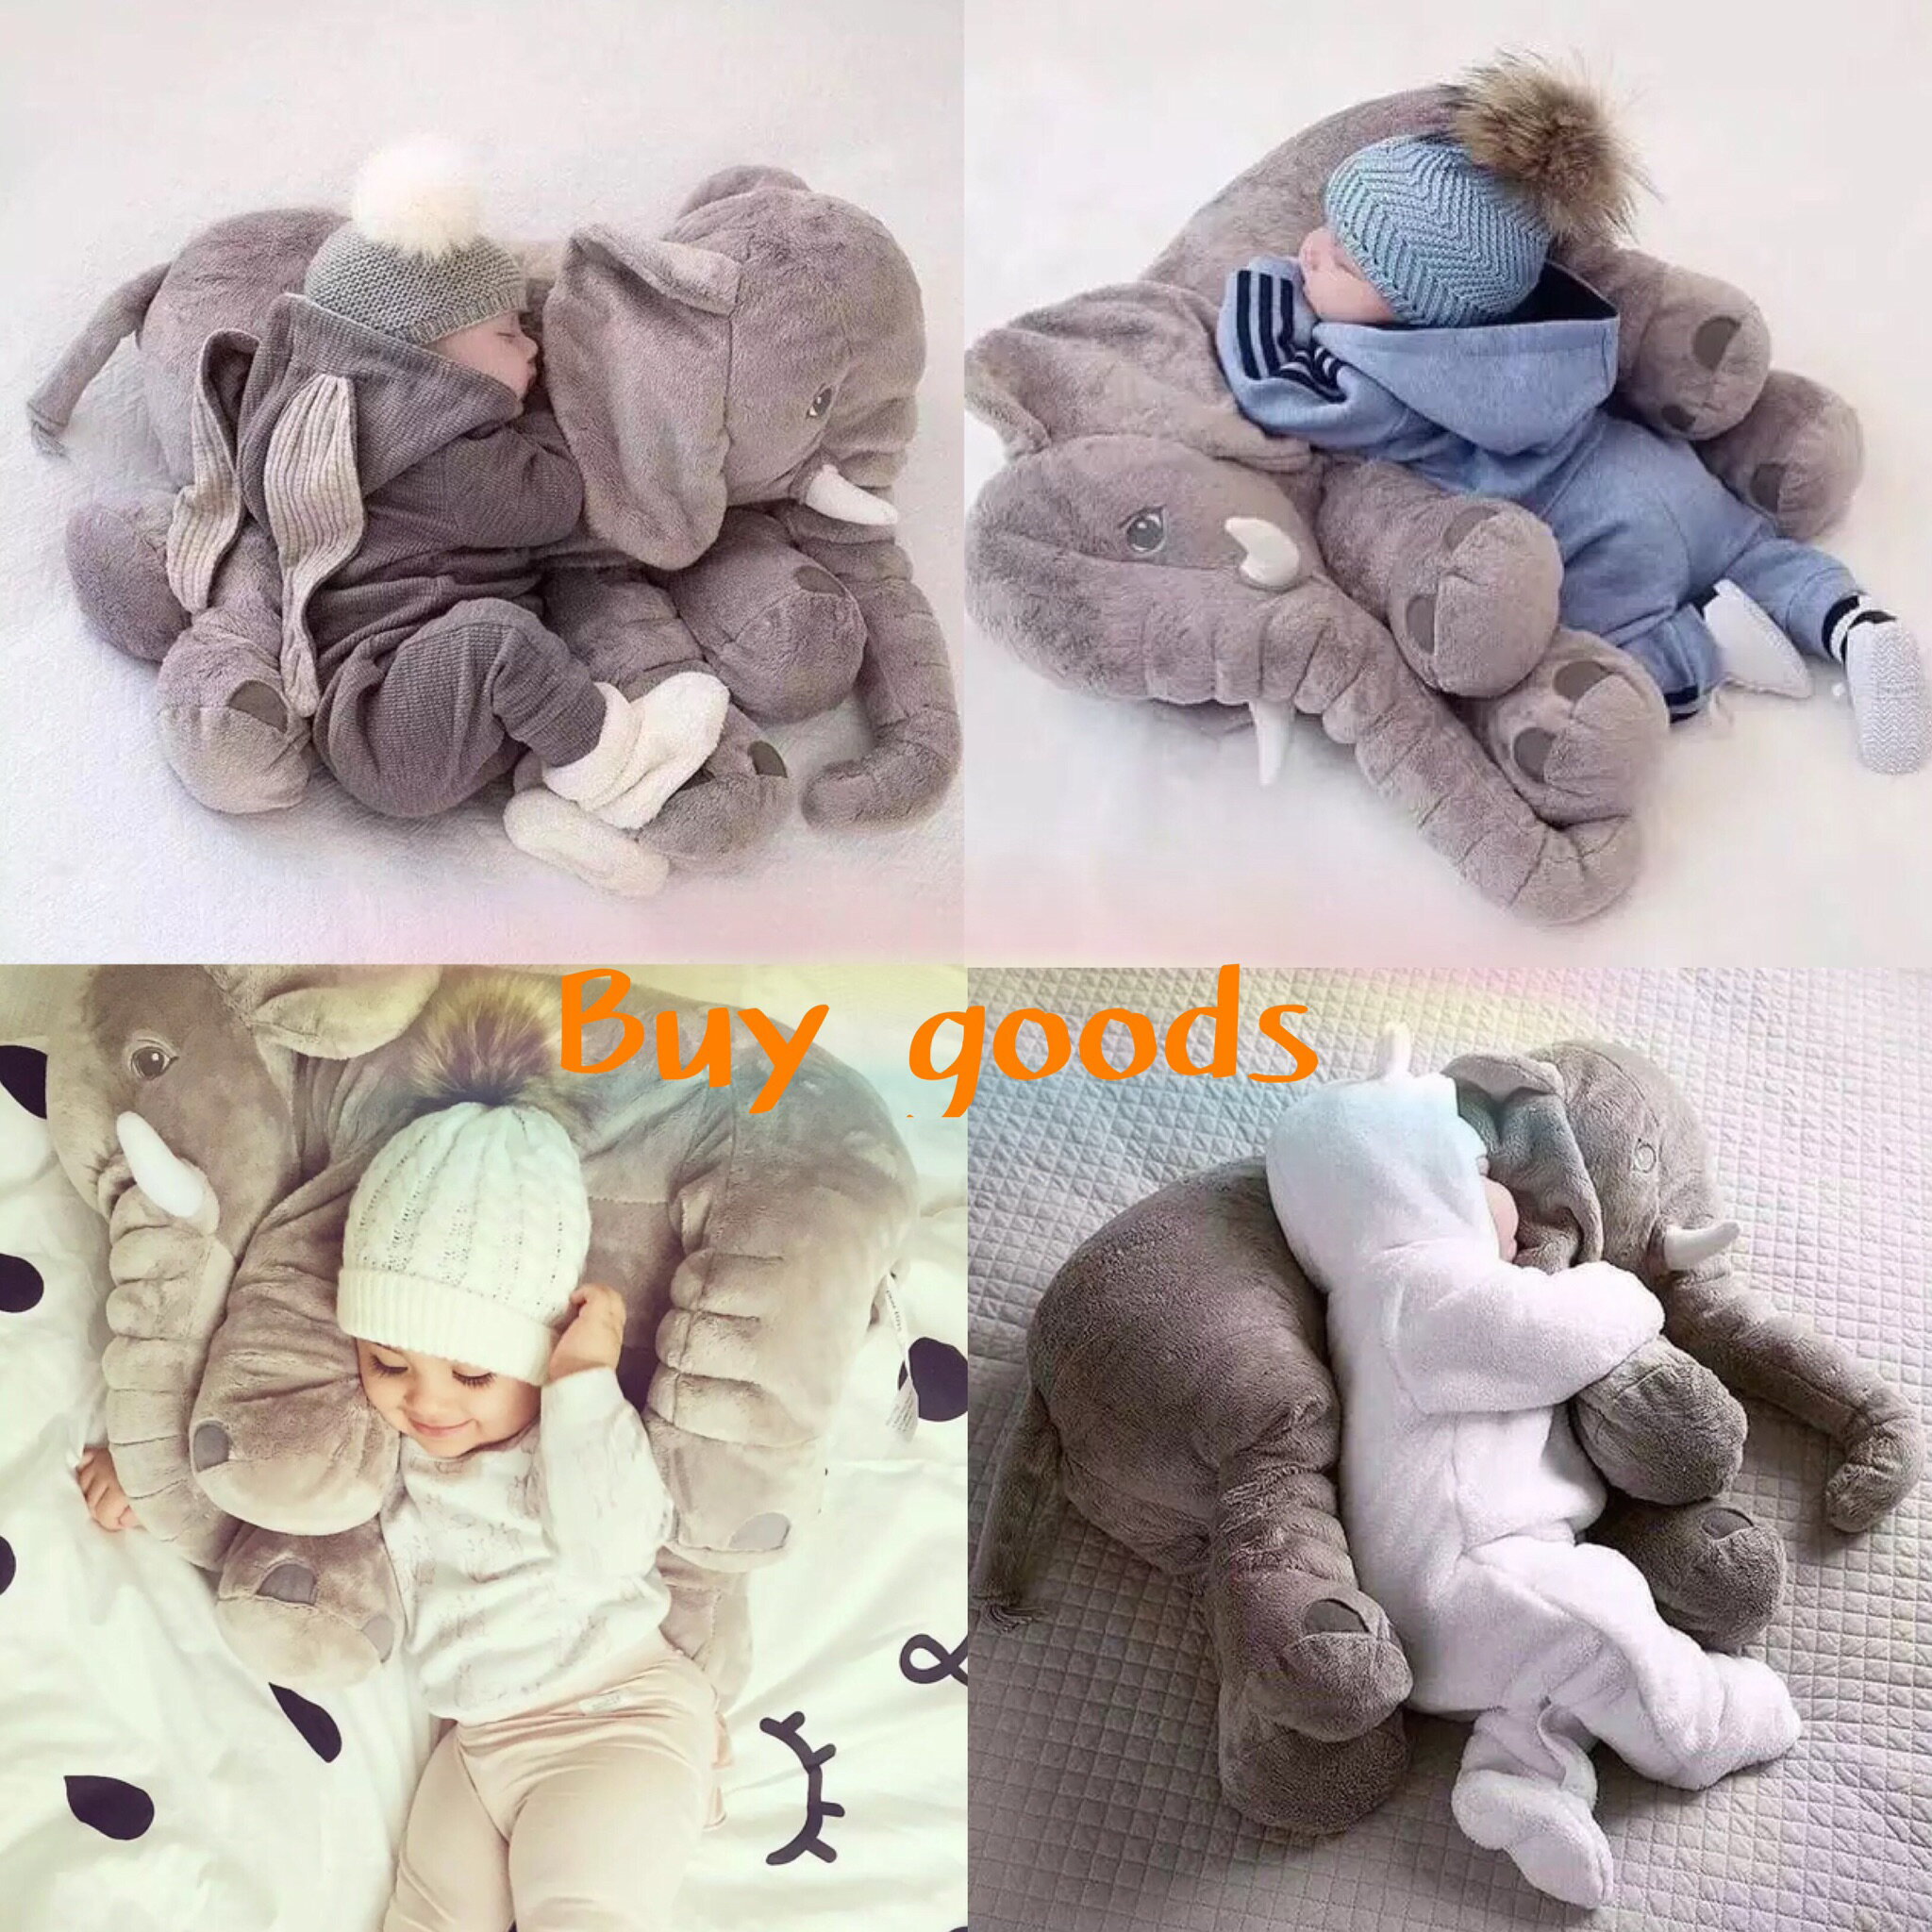 抱枕 靠枕 寶寶抱枕 睡覺枕 玩偶 玩具 毛絨大象公仔寶寶抱枕/大象抱枕/baby靠枕